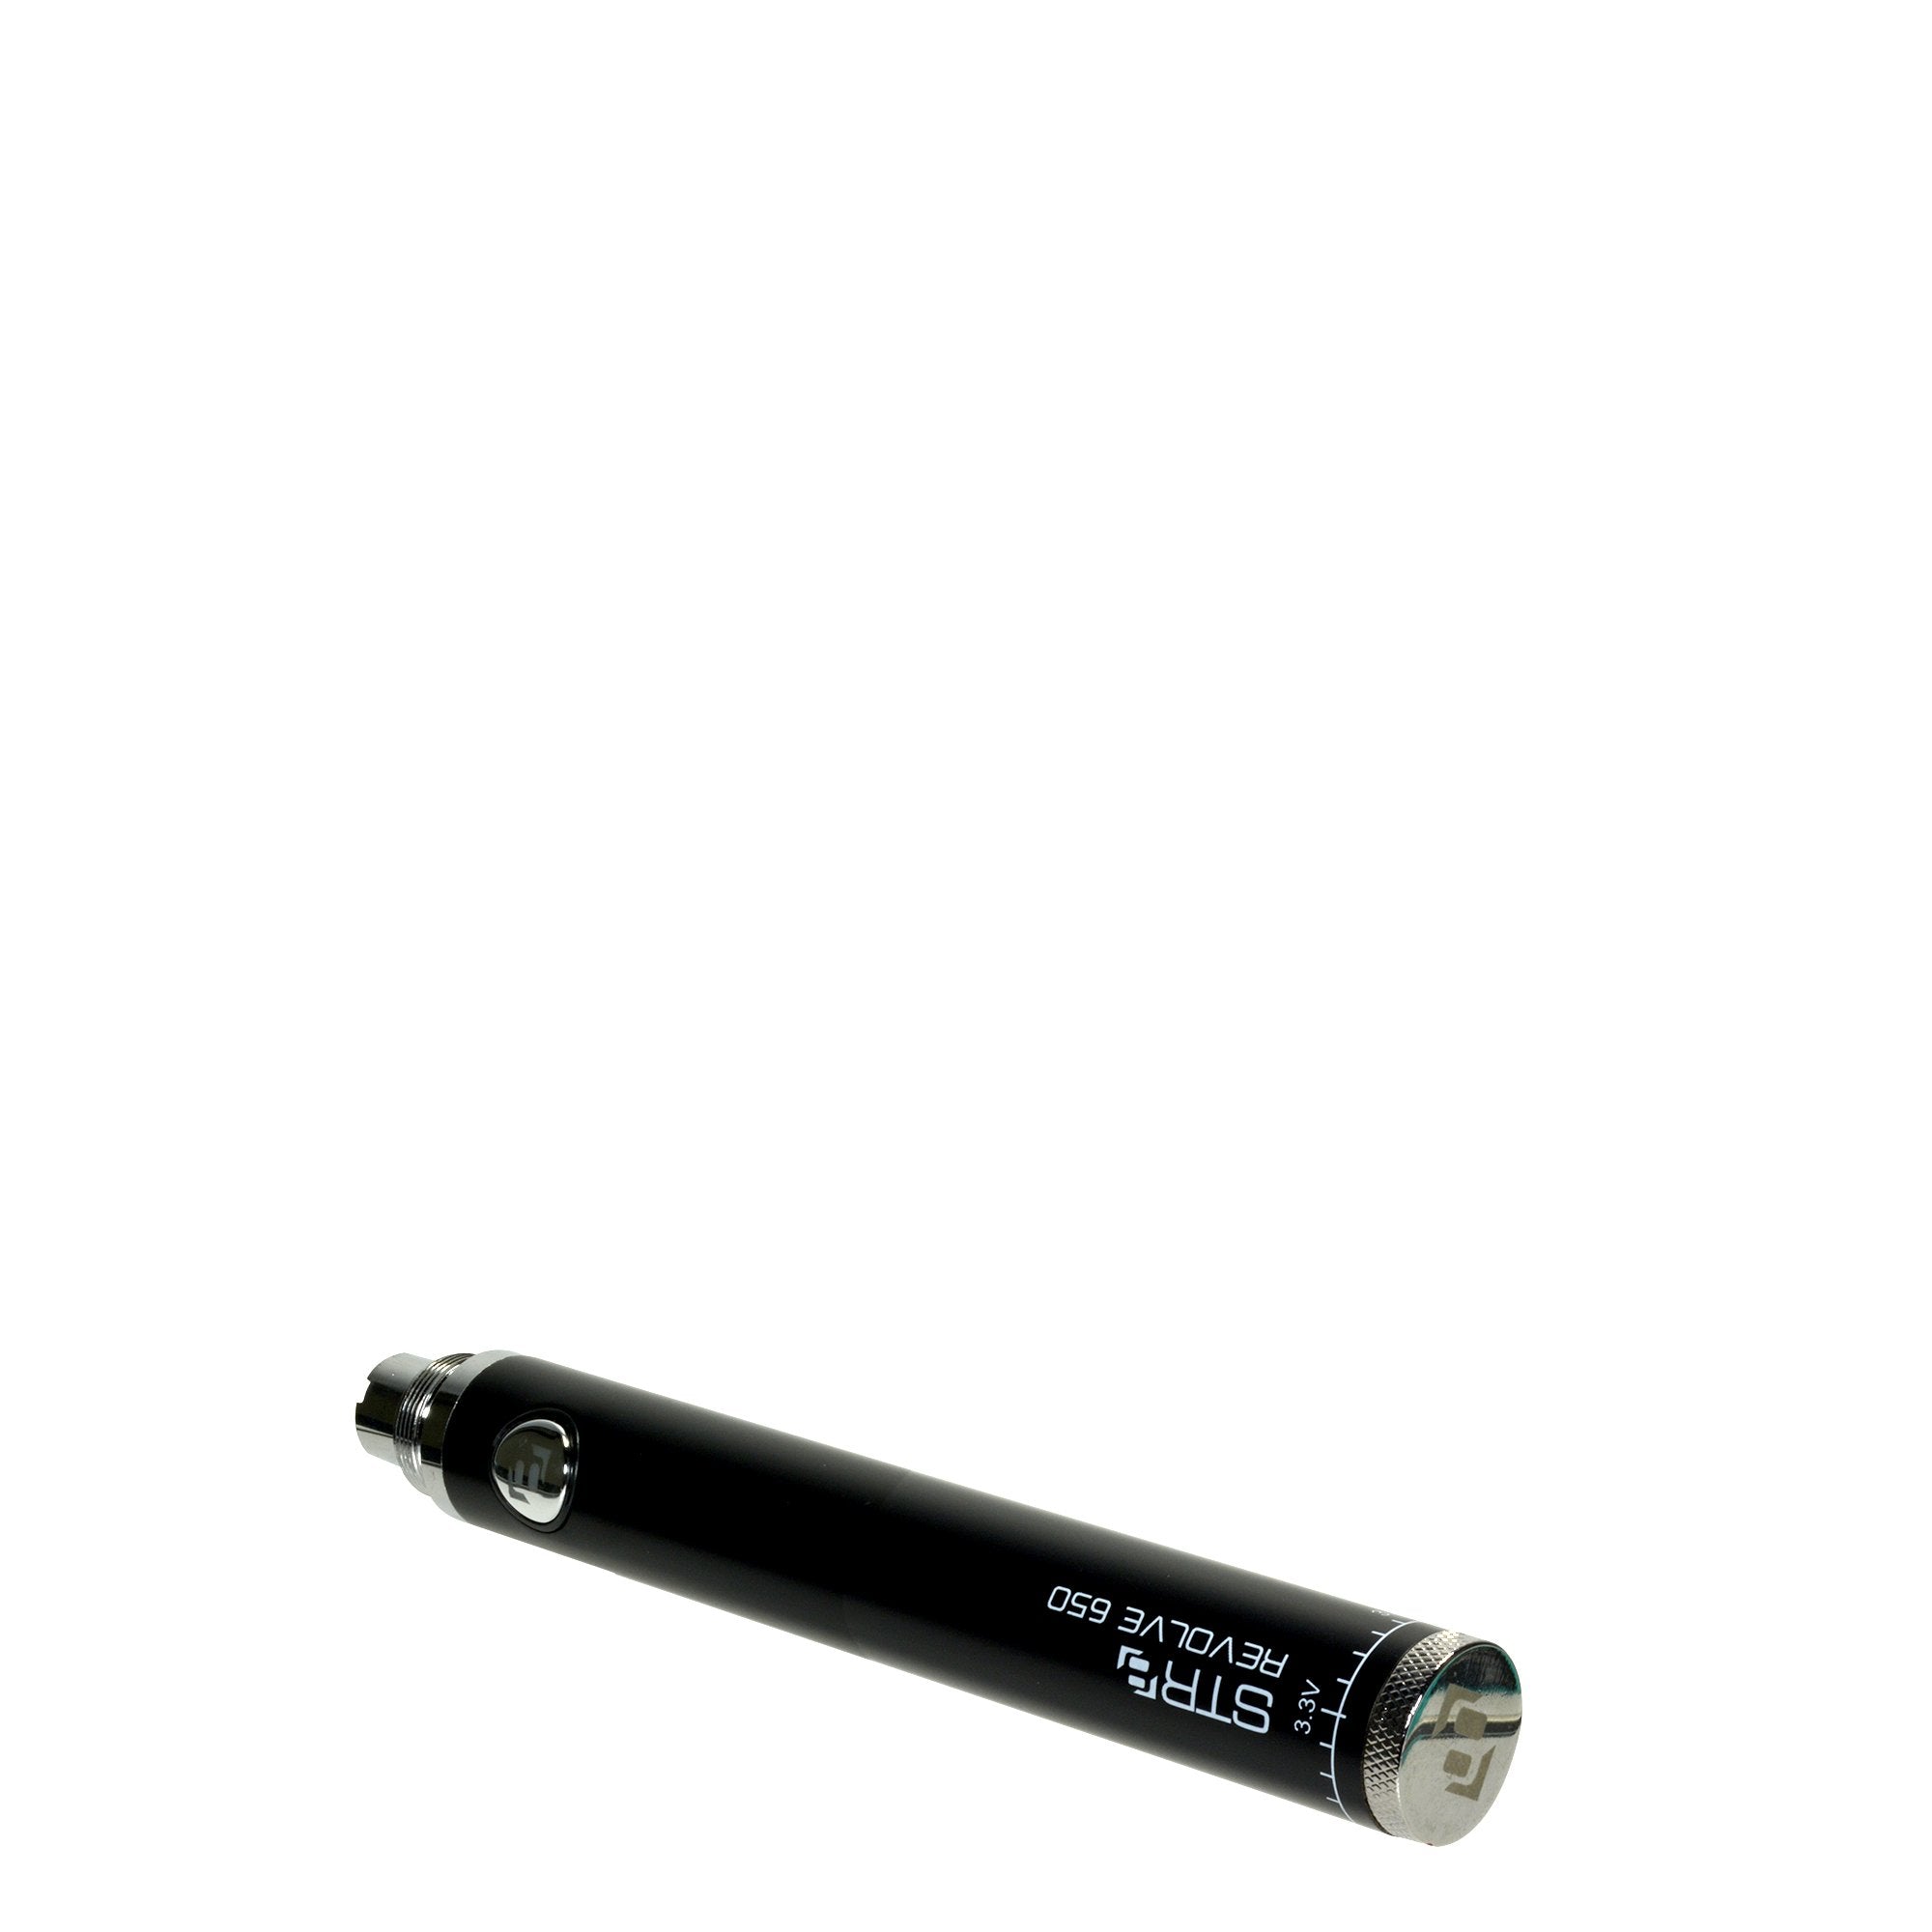 STR8 | Revolve Evod Vape Battery | 650mAh - Black - 5 Count - 4